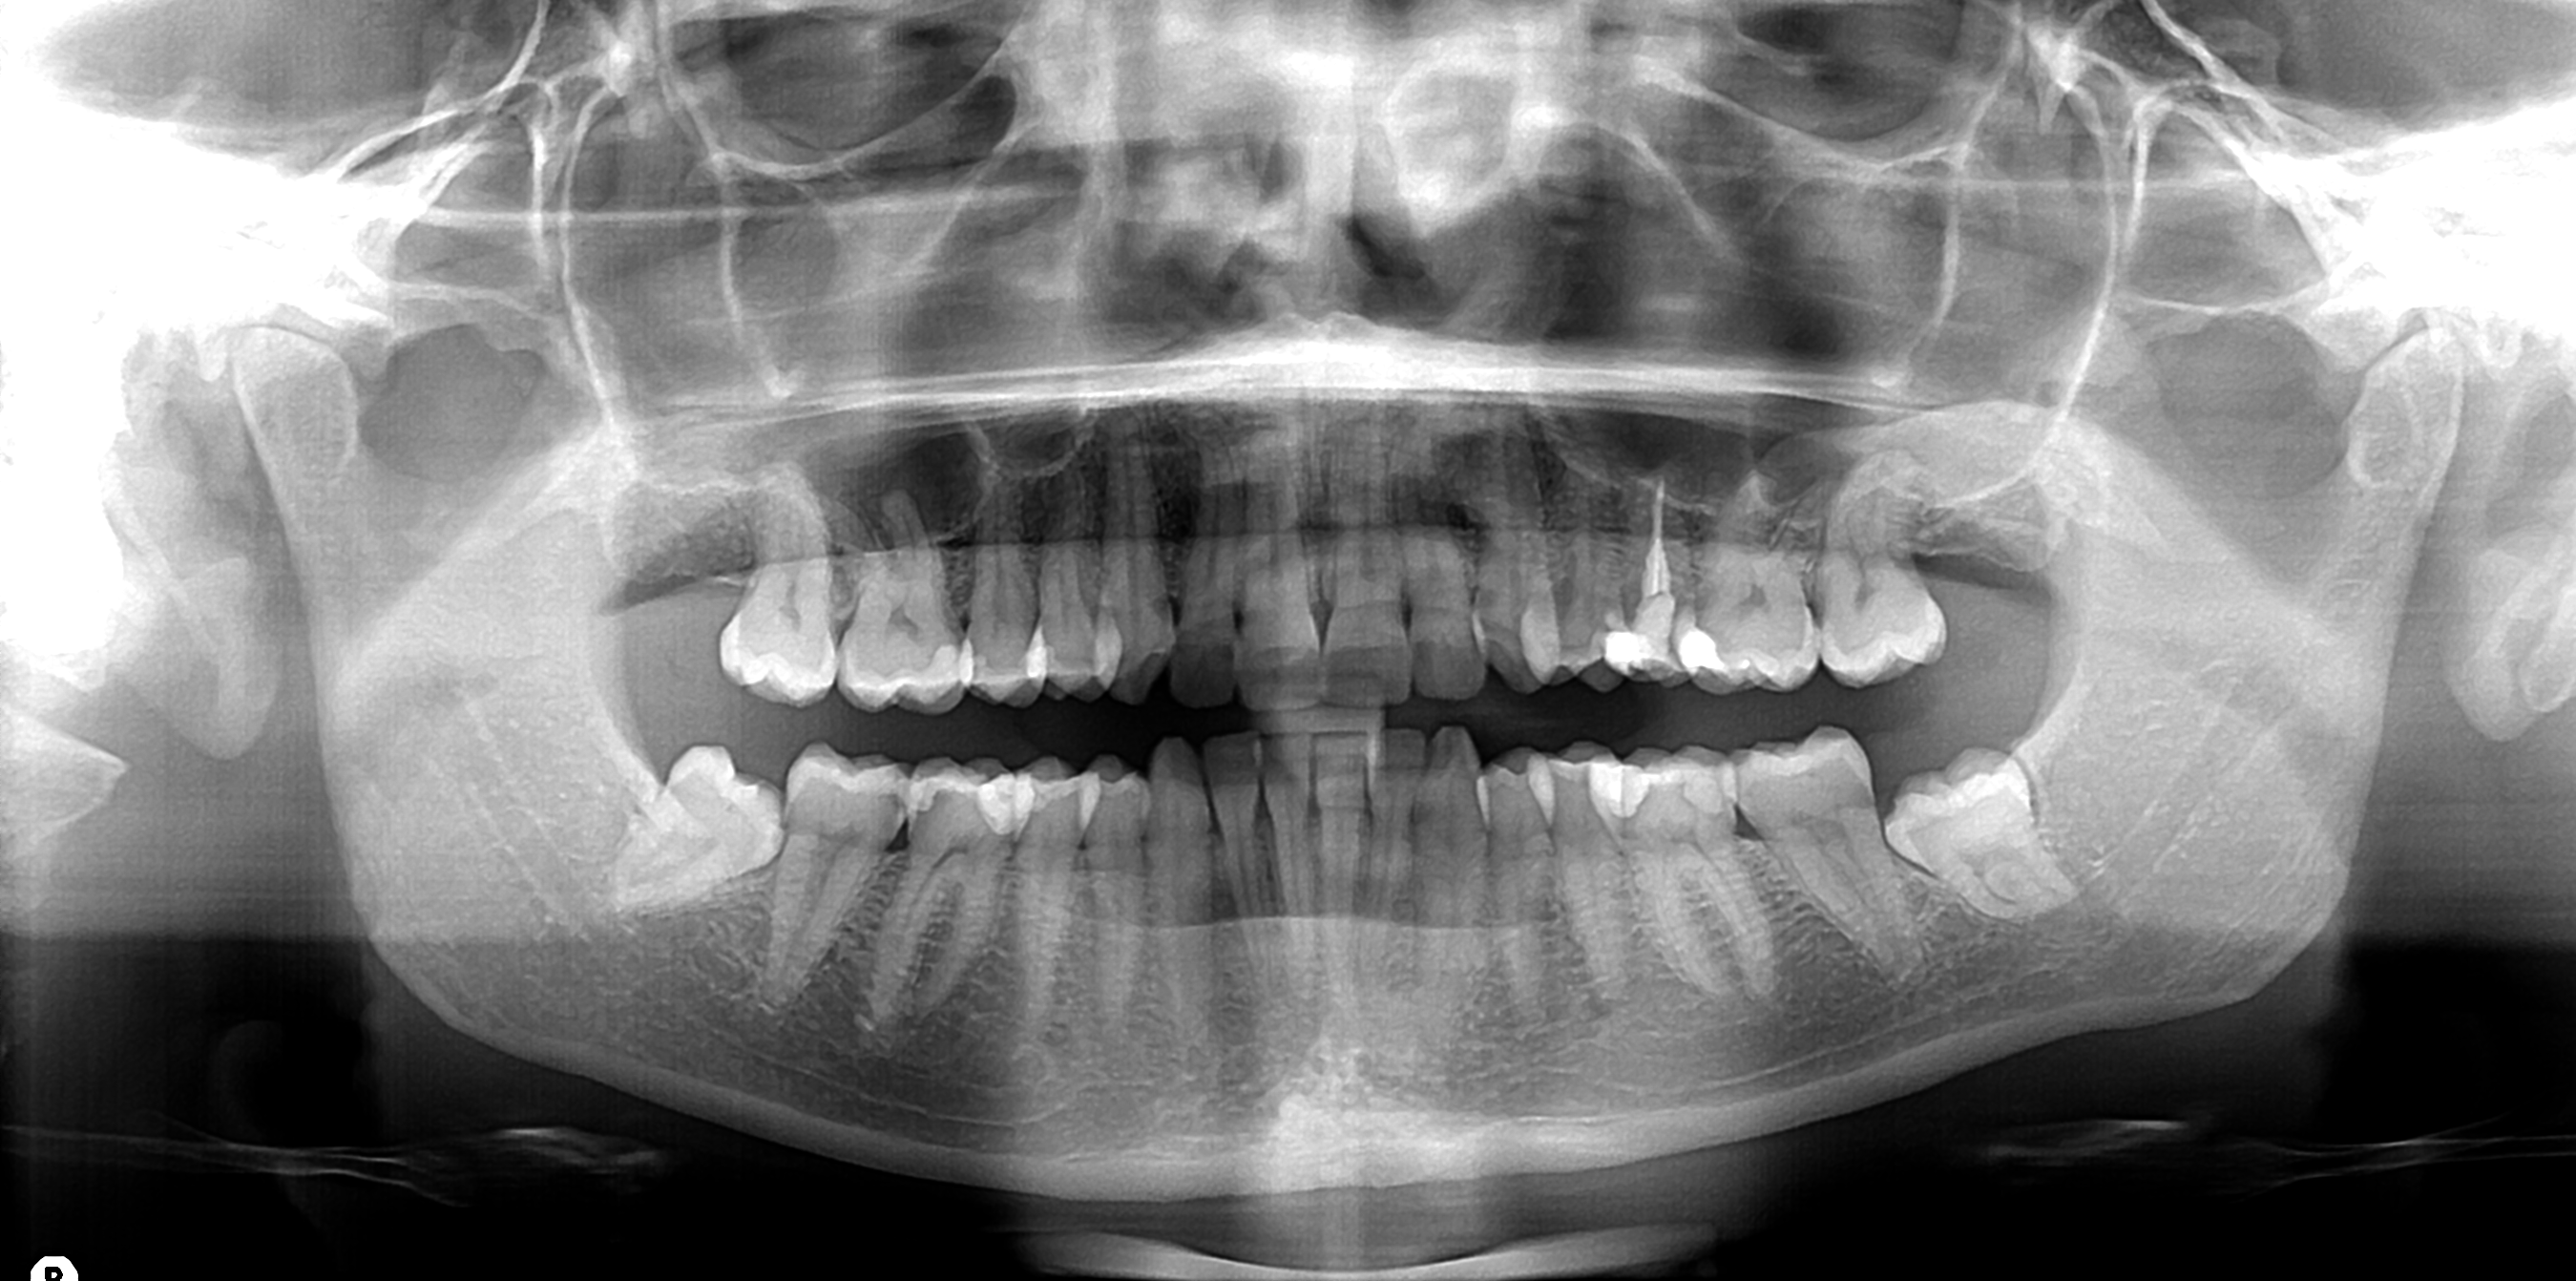 Radiografie dentali, sono rischiose per la salute?